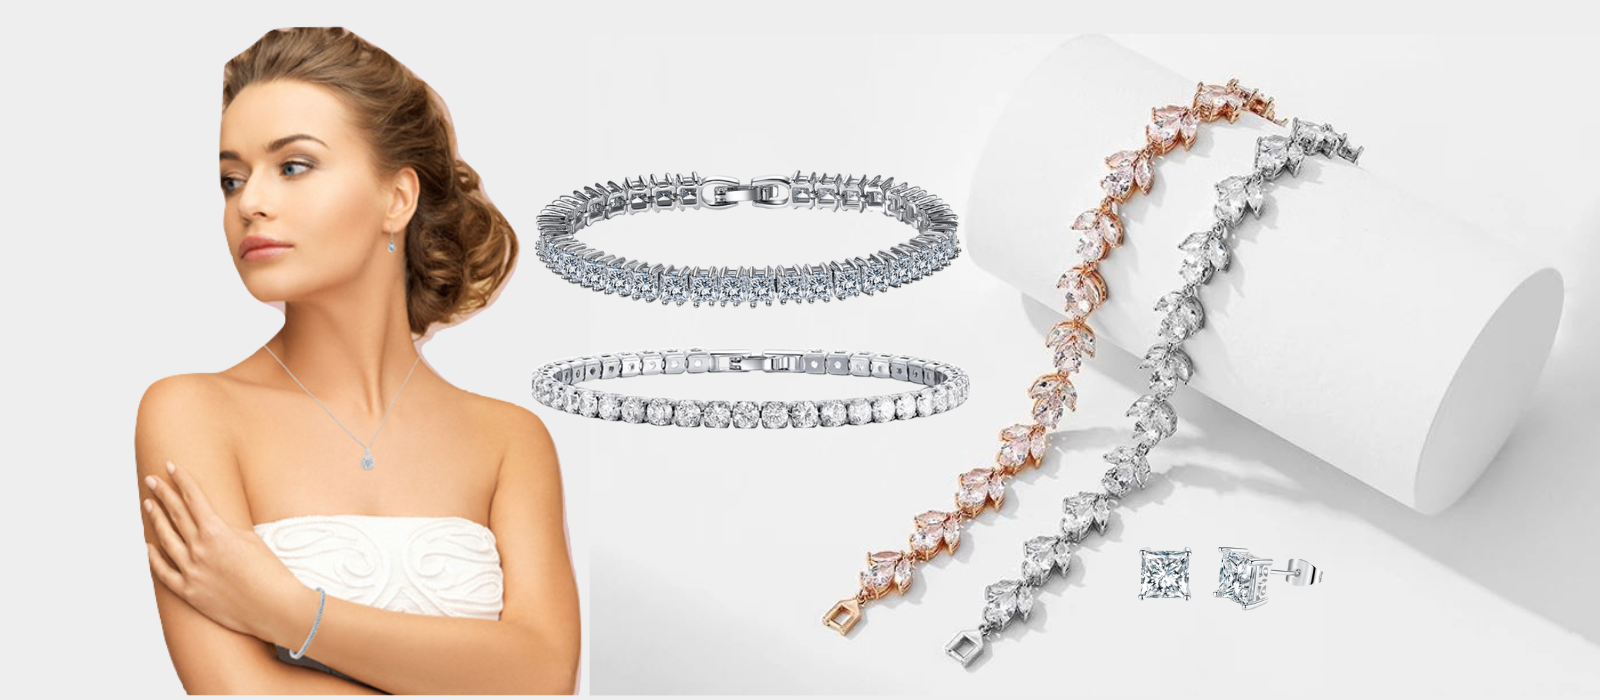 Womens jewelry Necklaces, Bracelets, Tennis Bracelets, Earrings